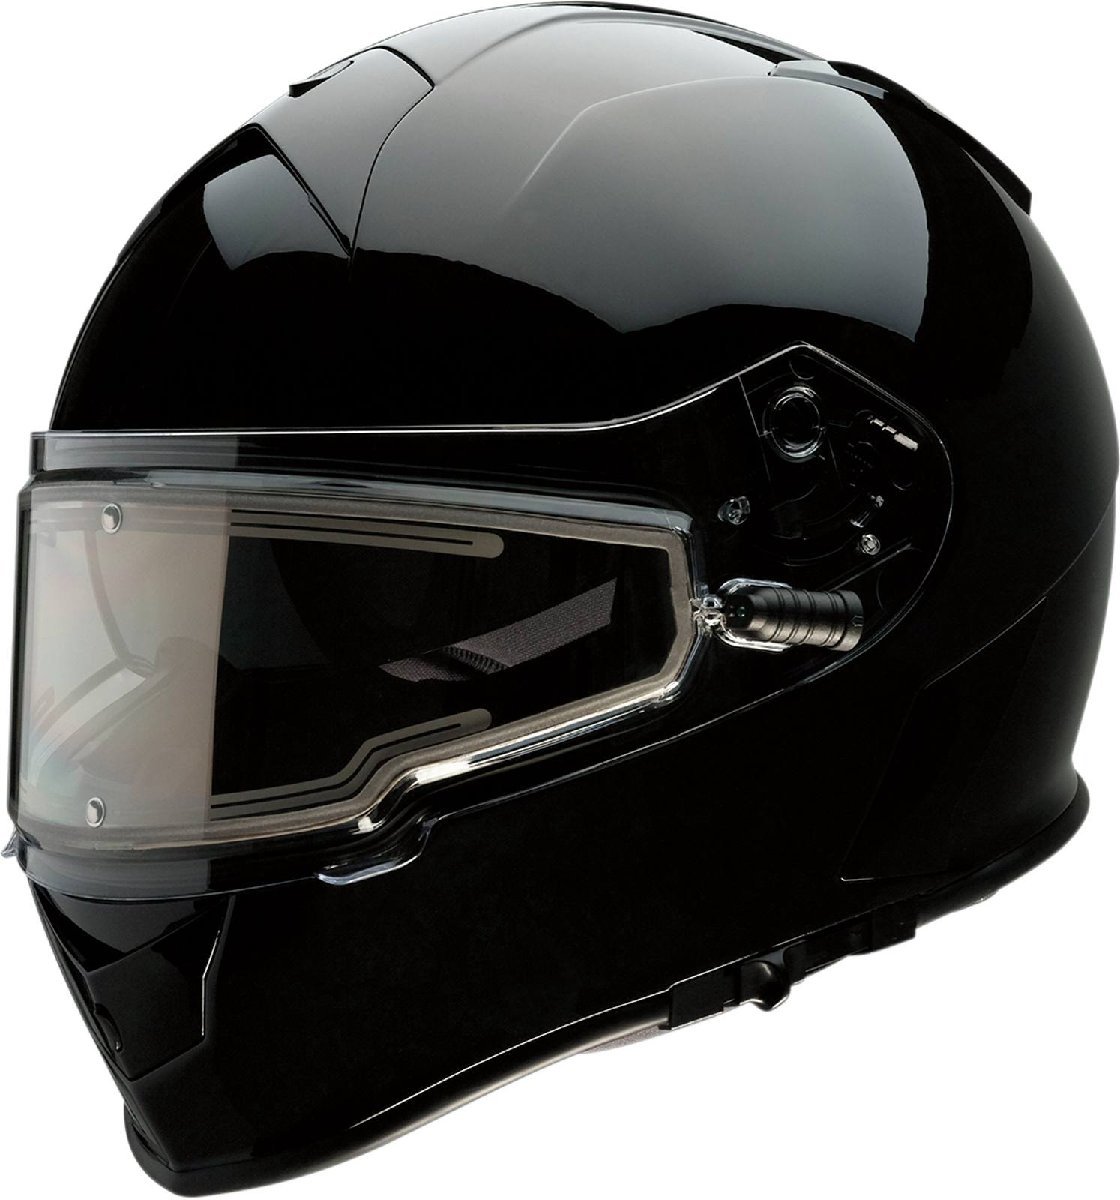 XSサイズ - ブラック - Z1R Warrant スノー エレクトリック/電熱シールド付き ヘルメット